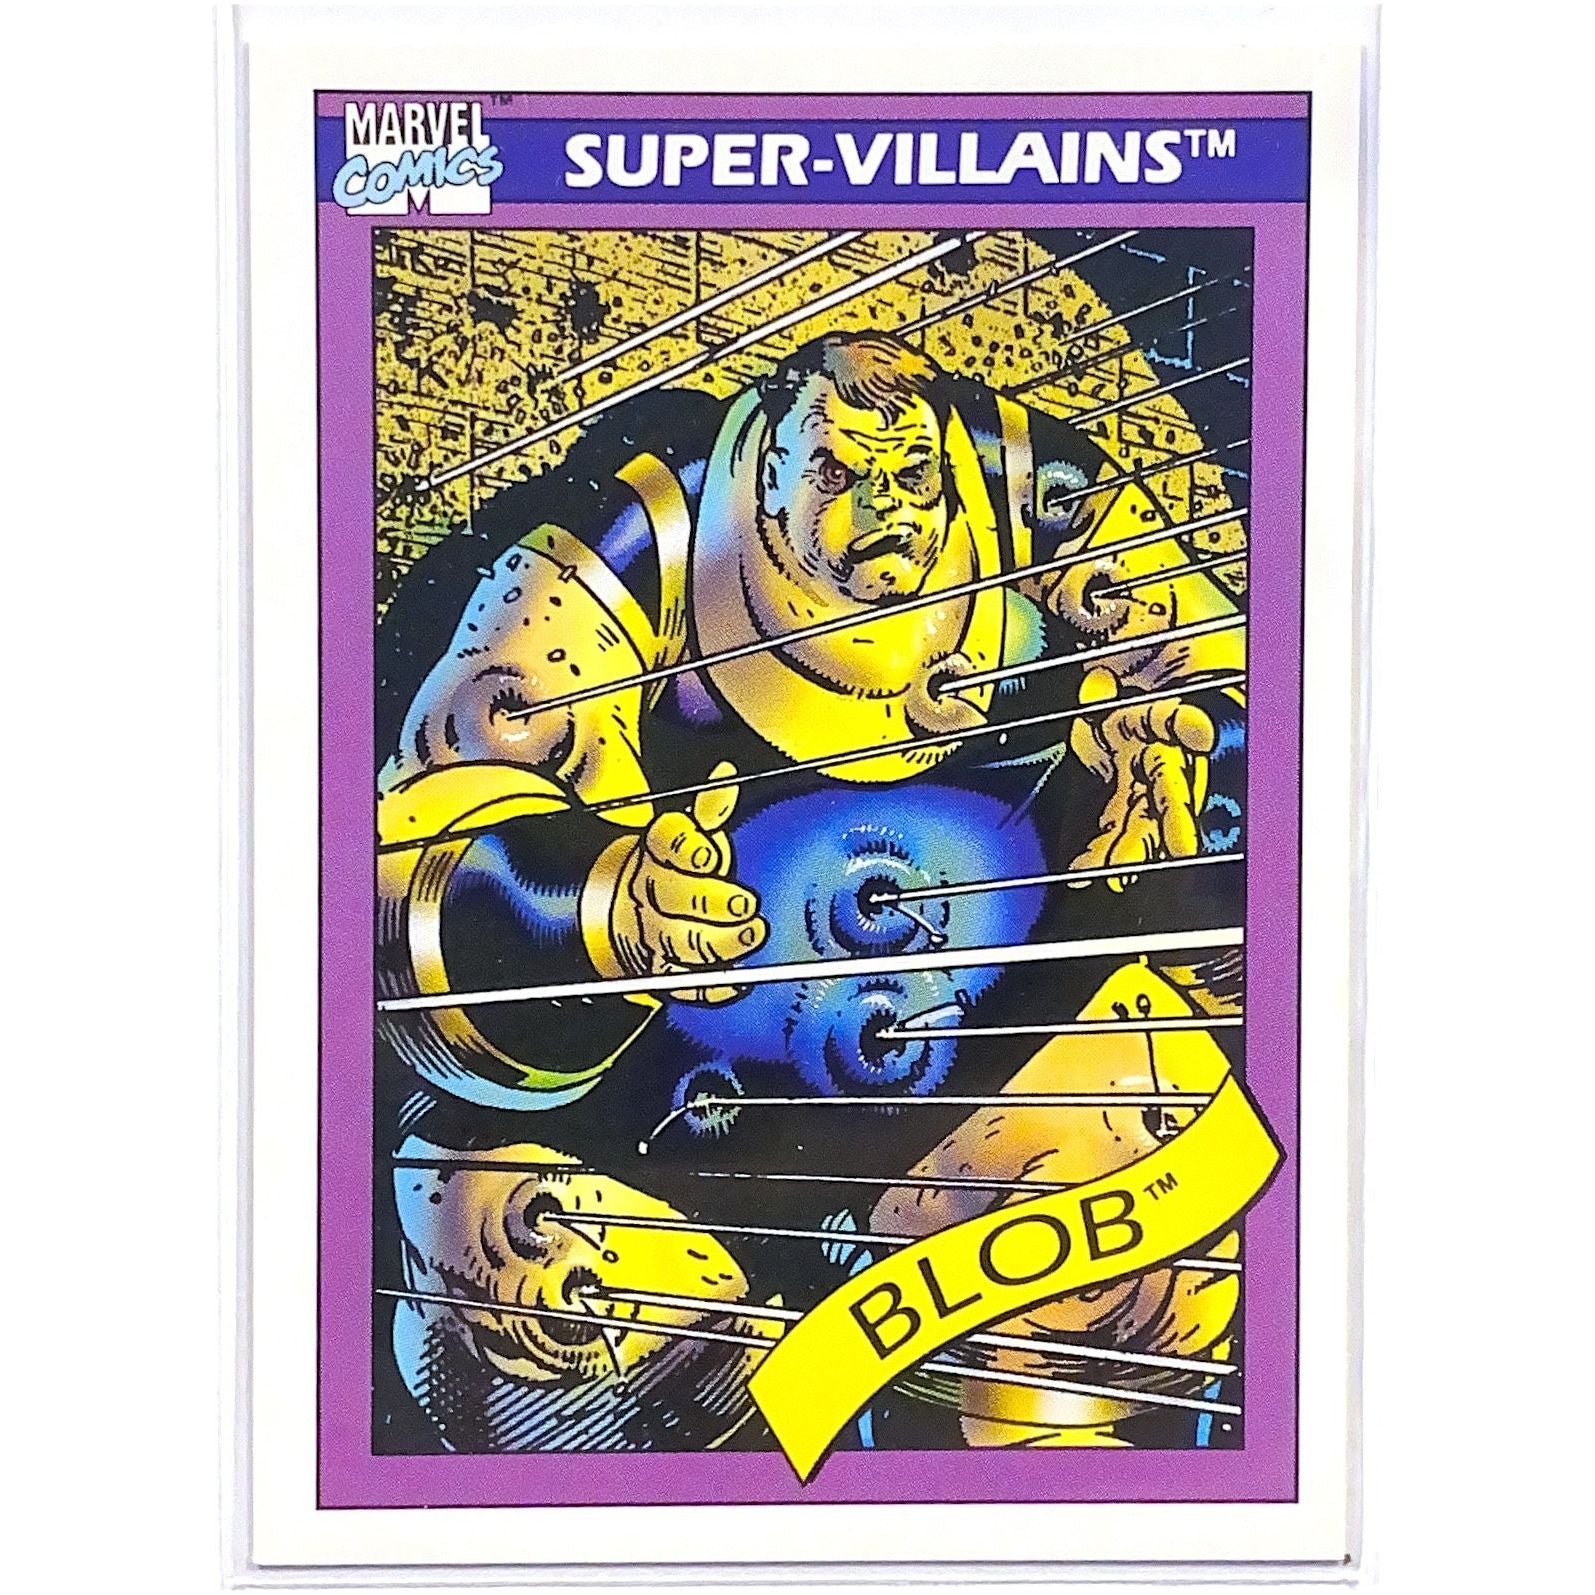  1990 Impel Marvel Comics Super-Villains Blob #71  Local Legends Cards & Collectibles